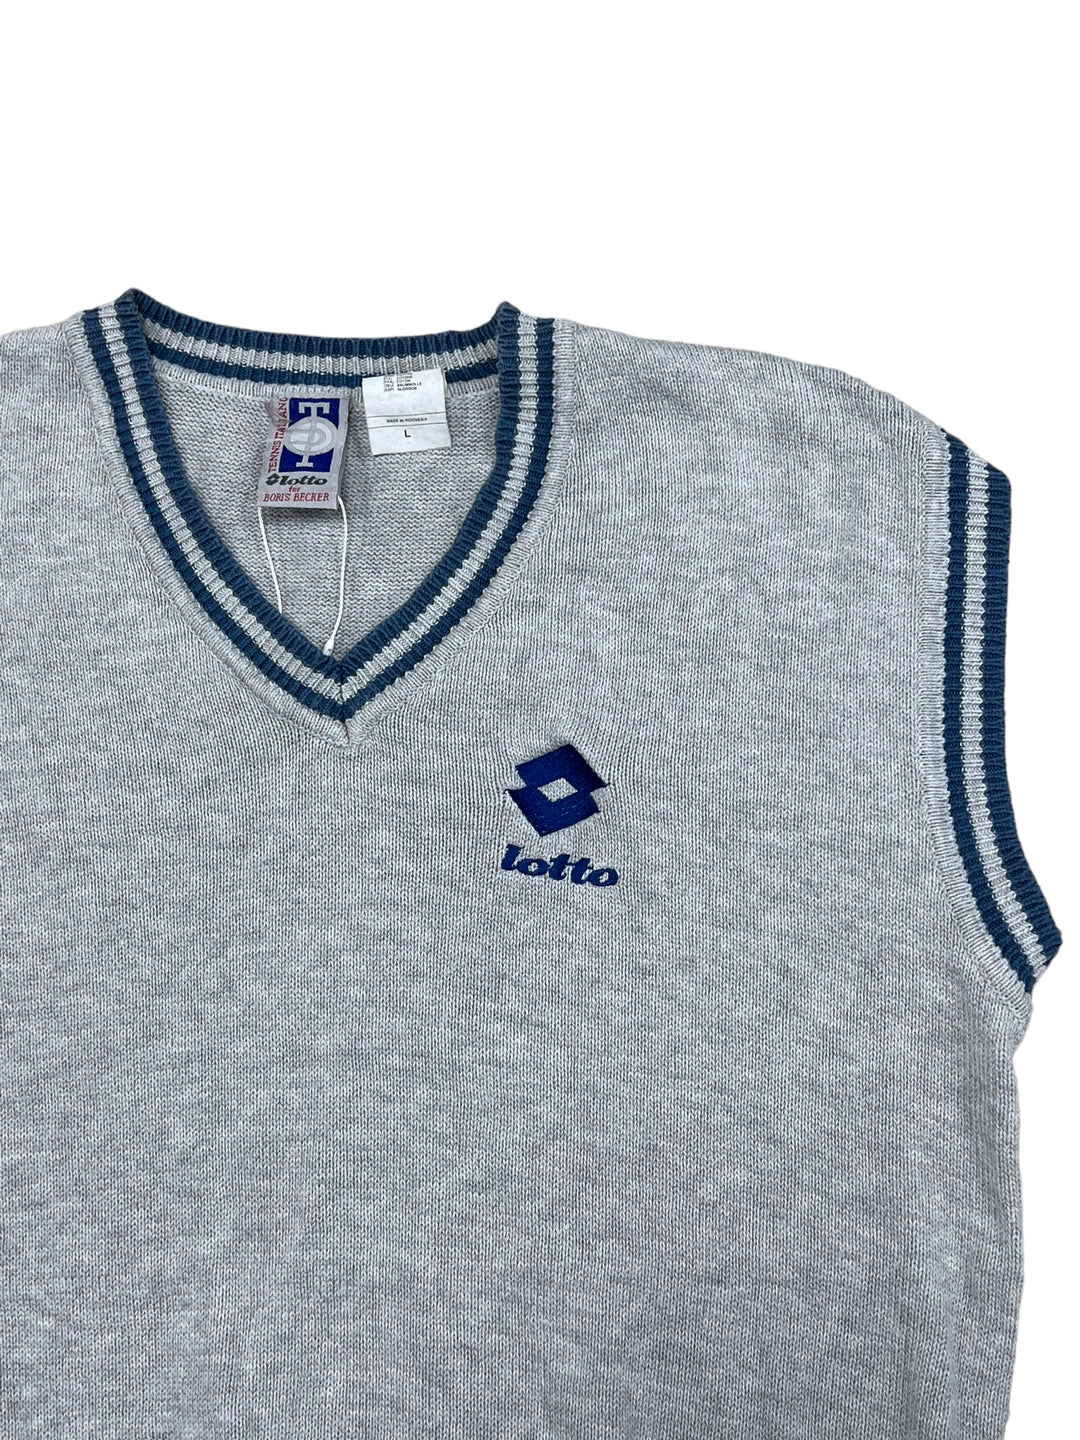 Lotto Vintage Sweater Vest Men’s Large